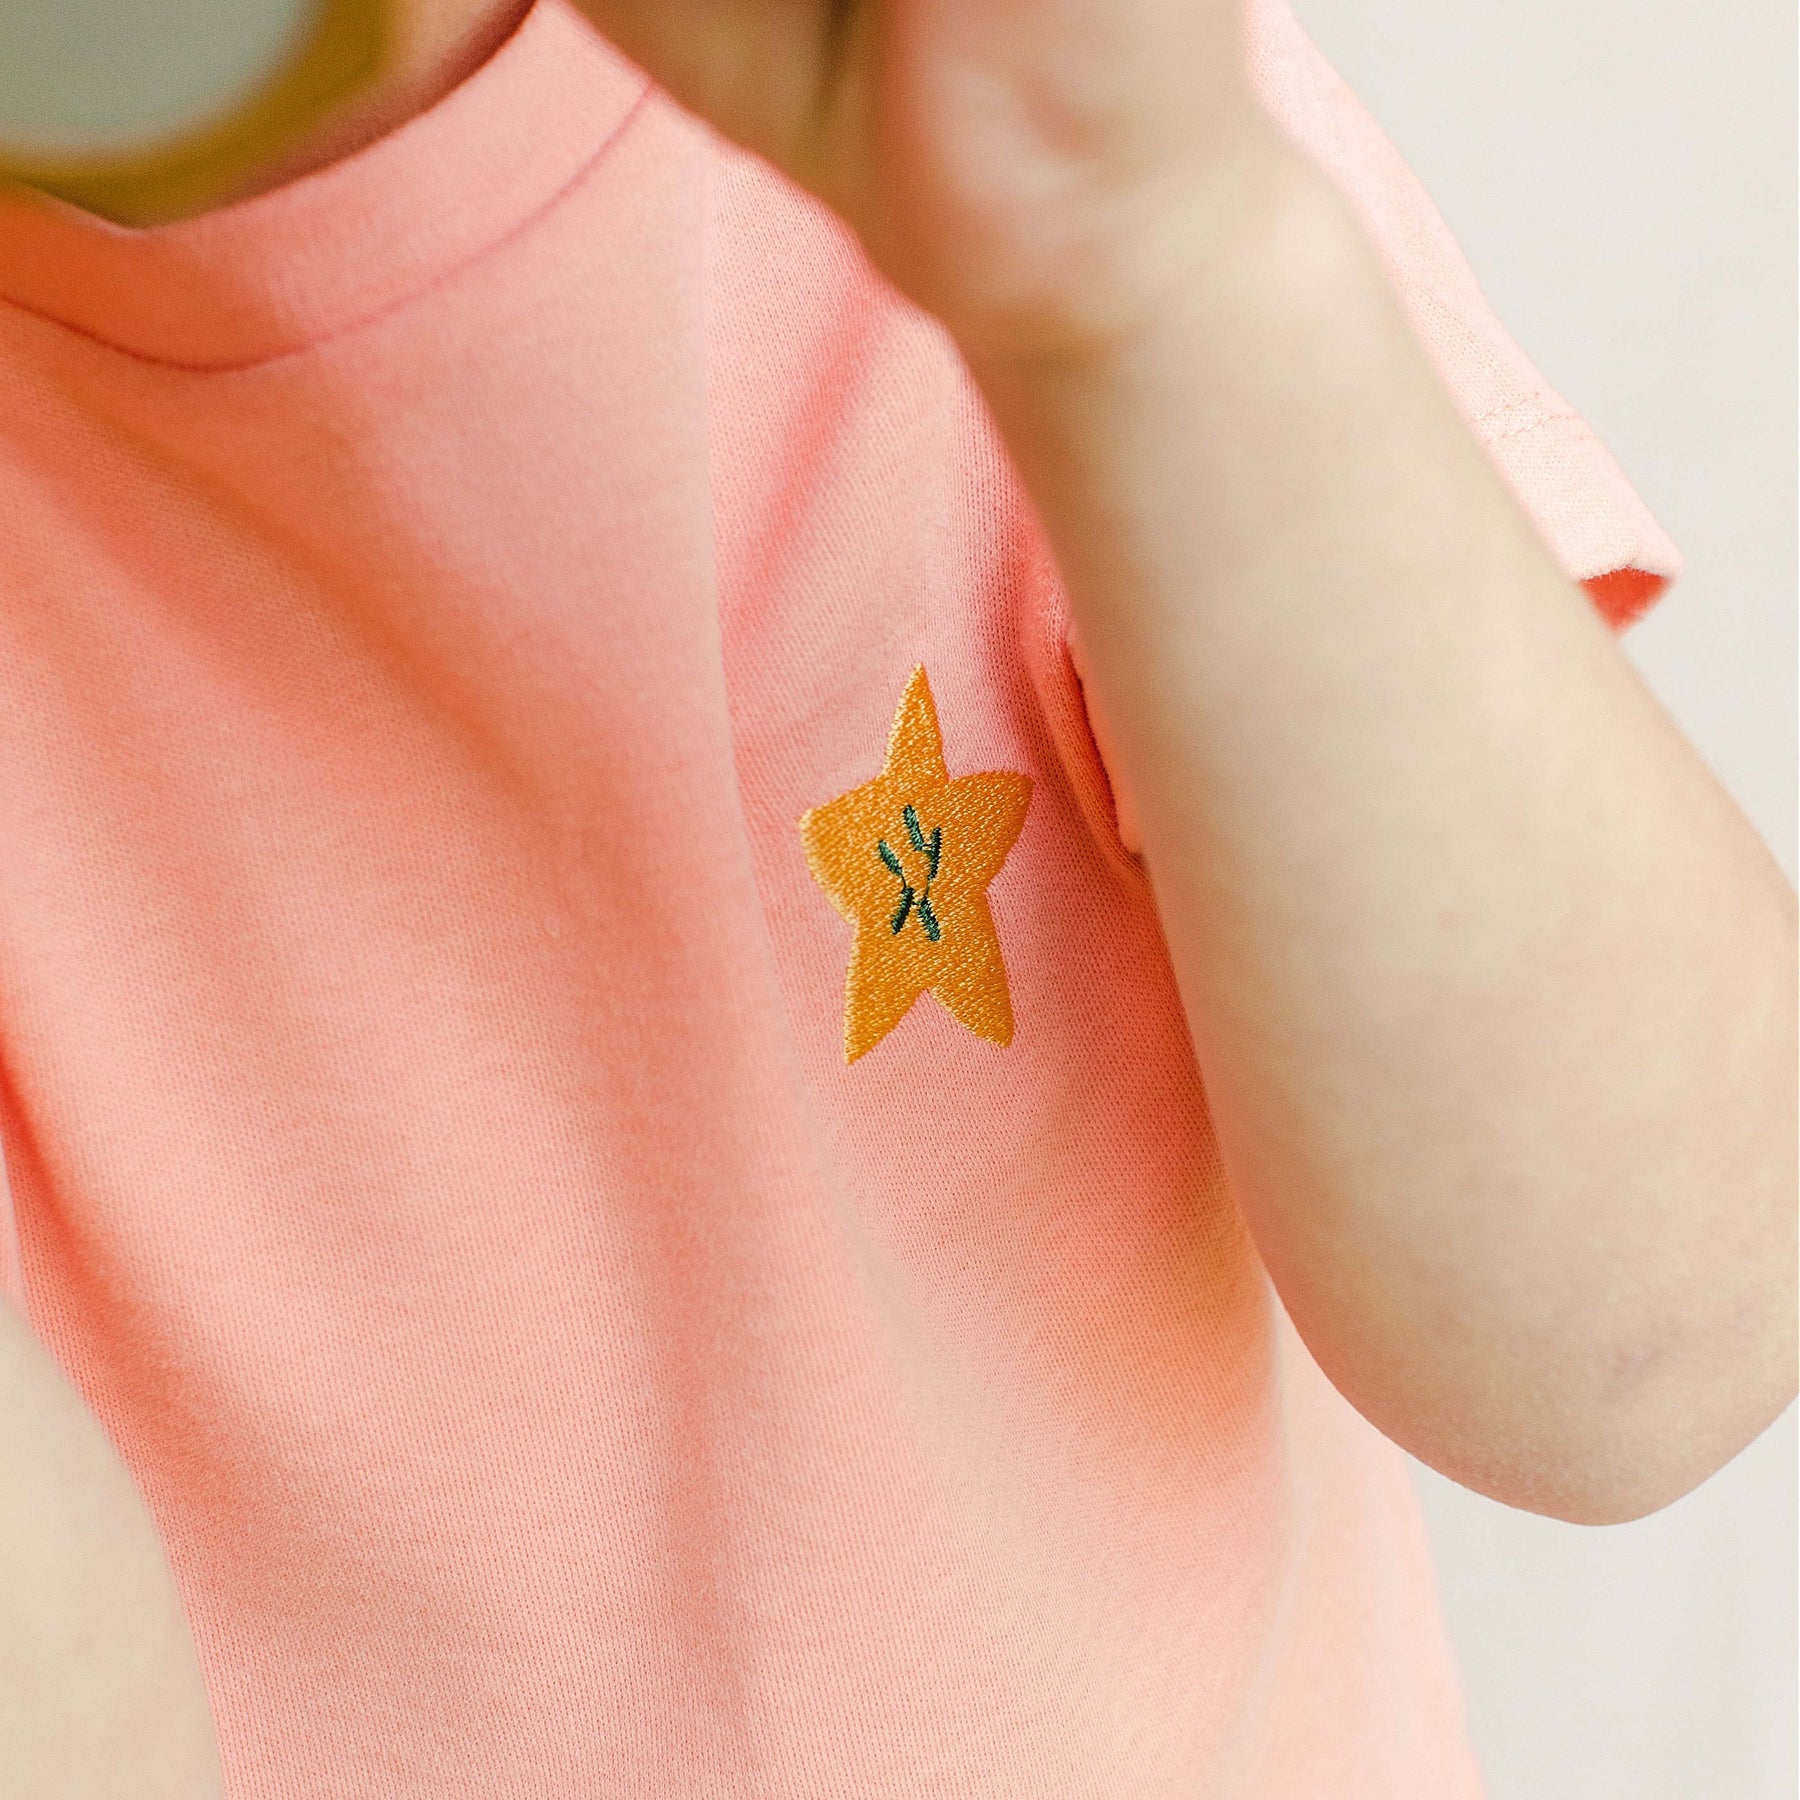 Pyjacourt enfant modèle Carambole Corail, avec t-shirt manches courtes brodé et short